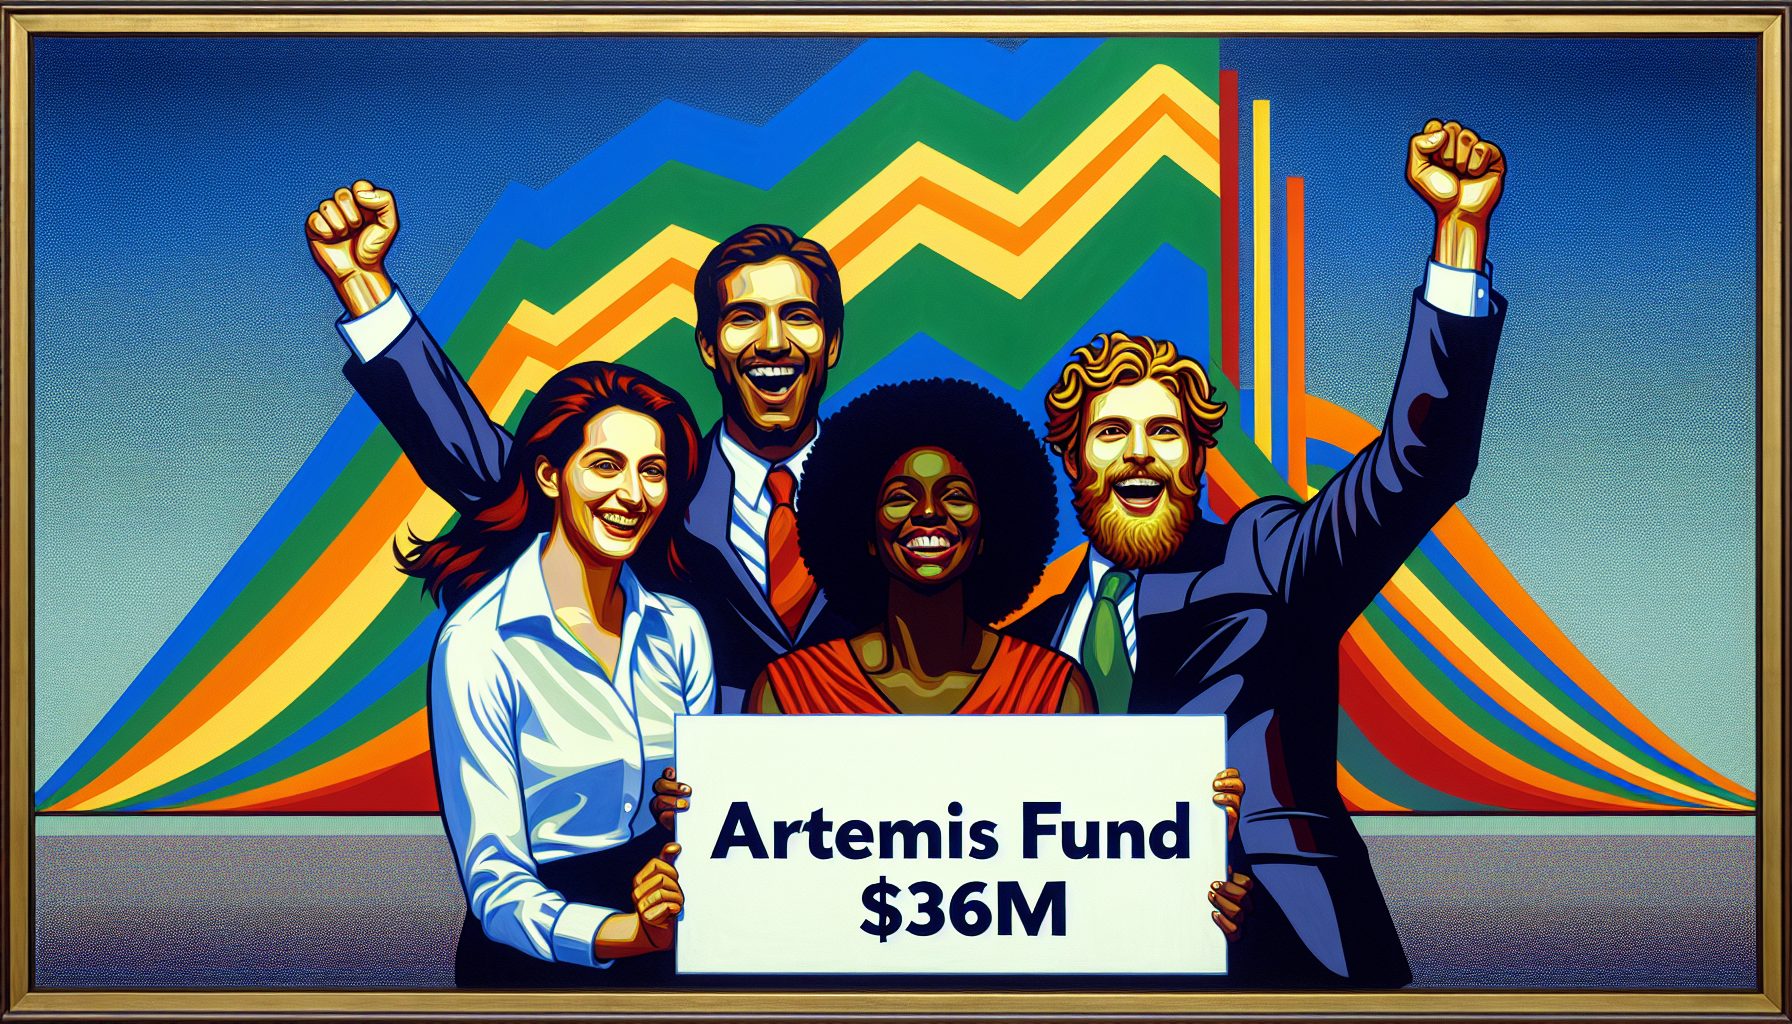 "Artemis Fund"